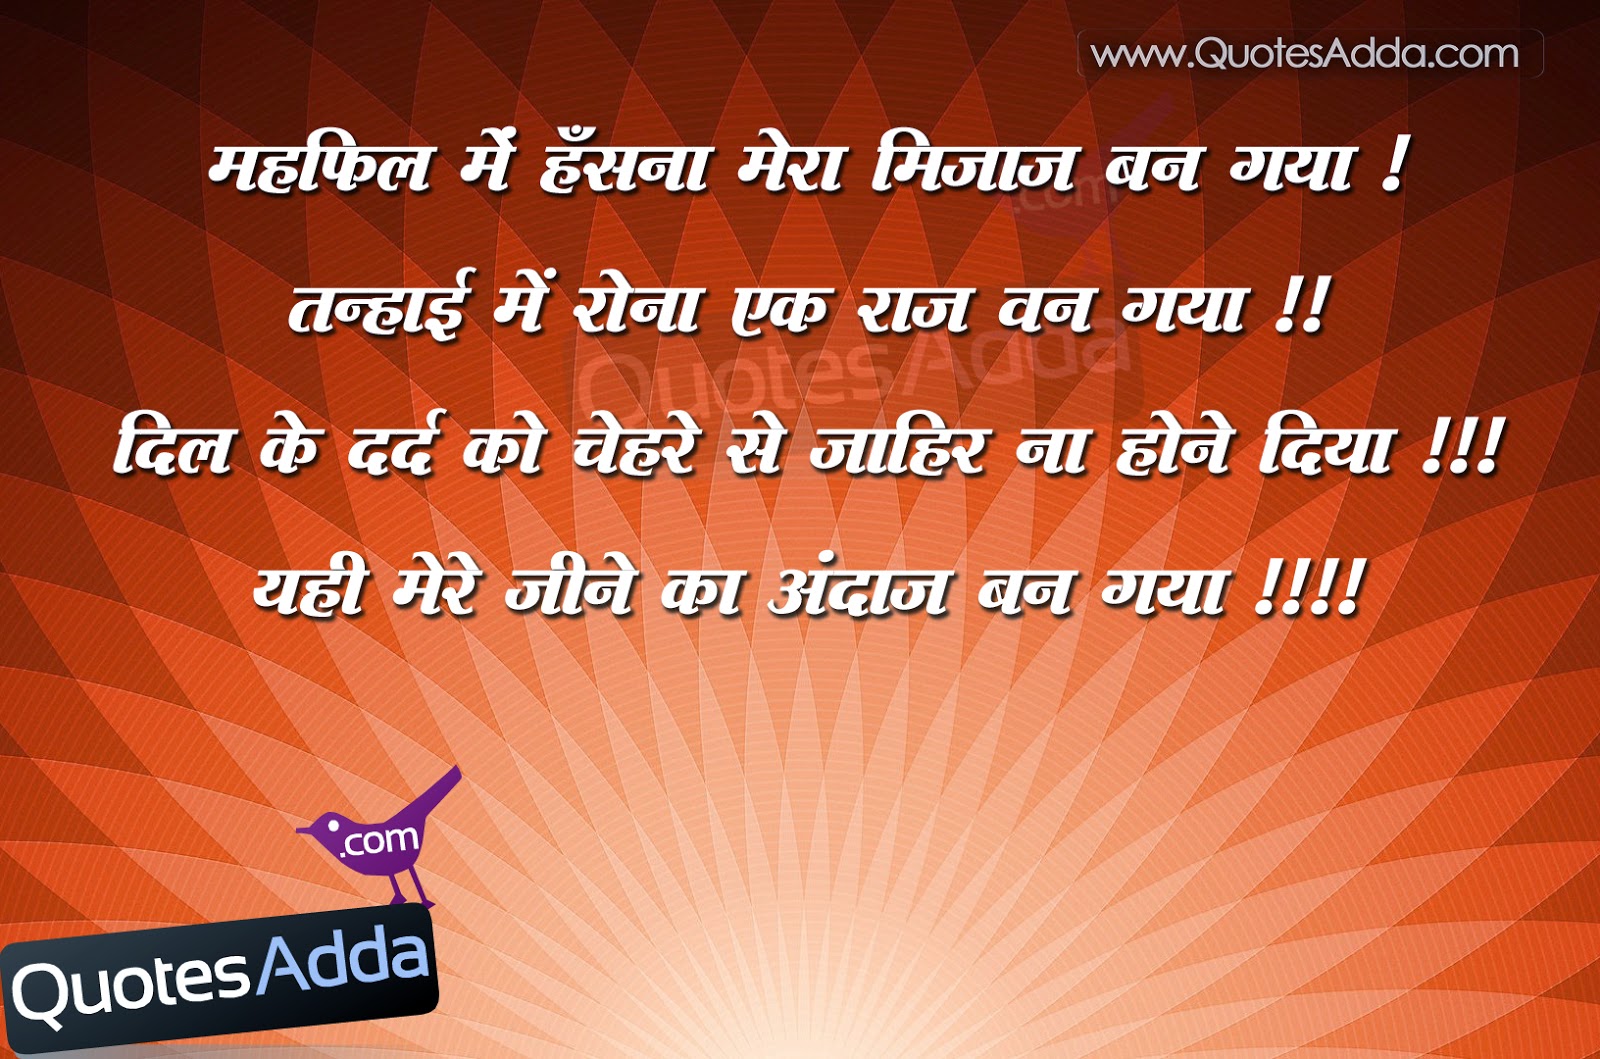 Hindi , Hindi Thoughts 6/13/2014